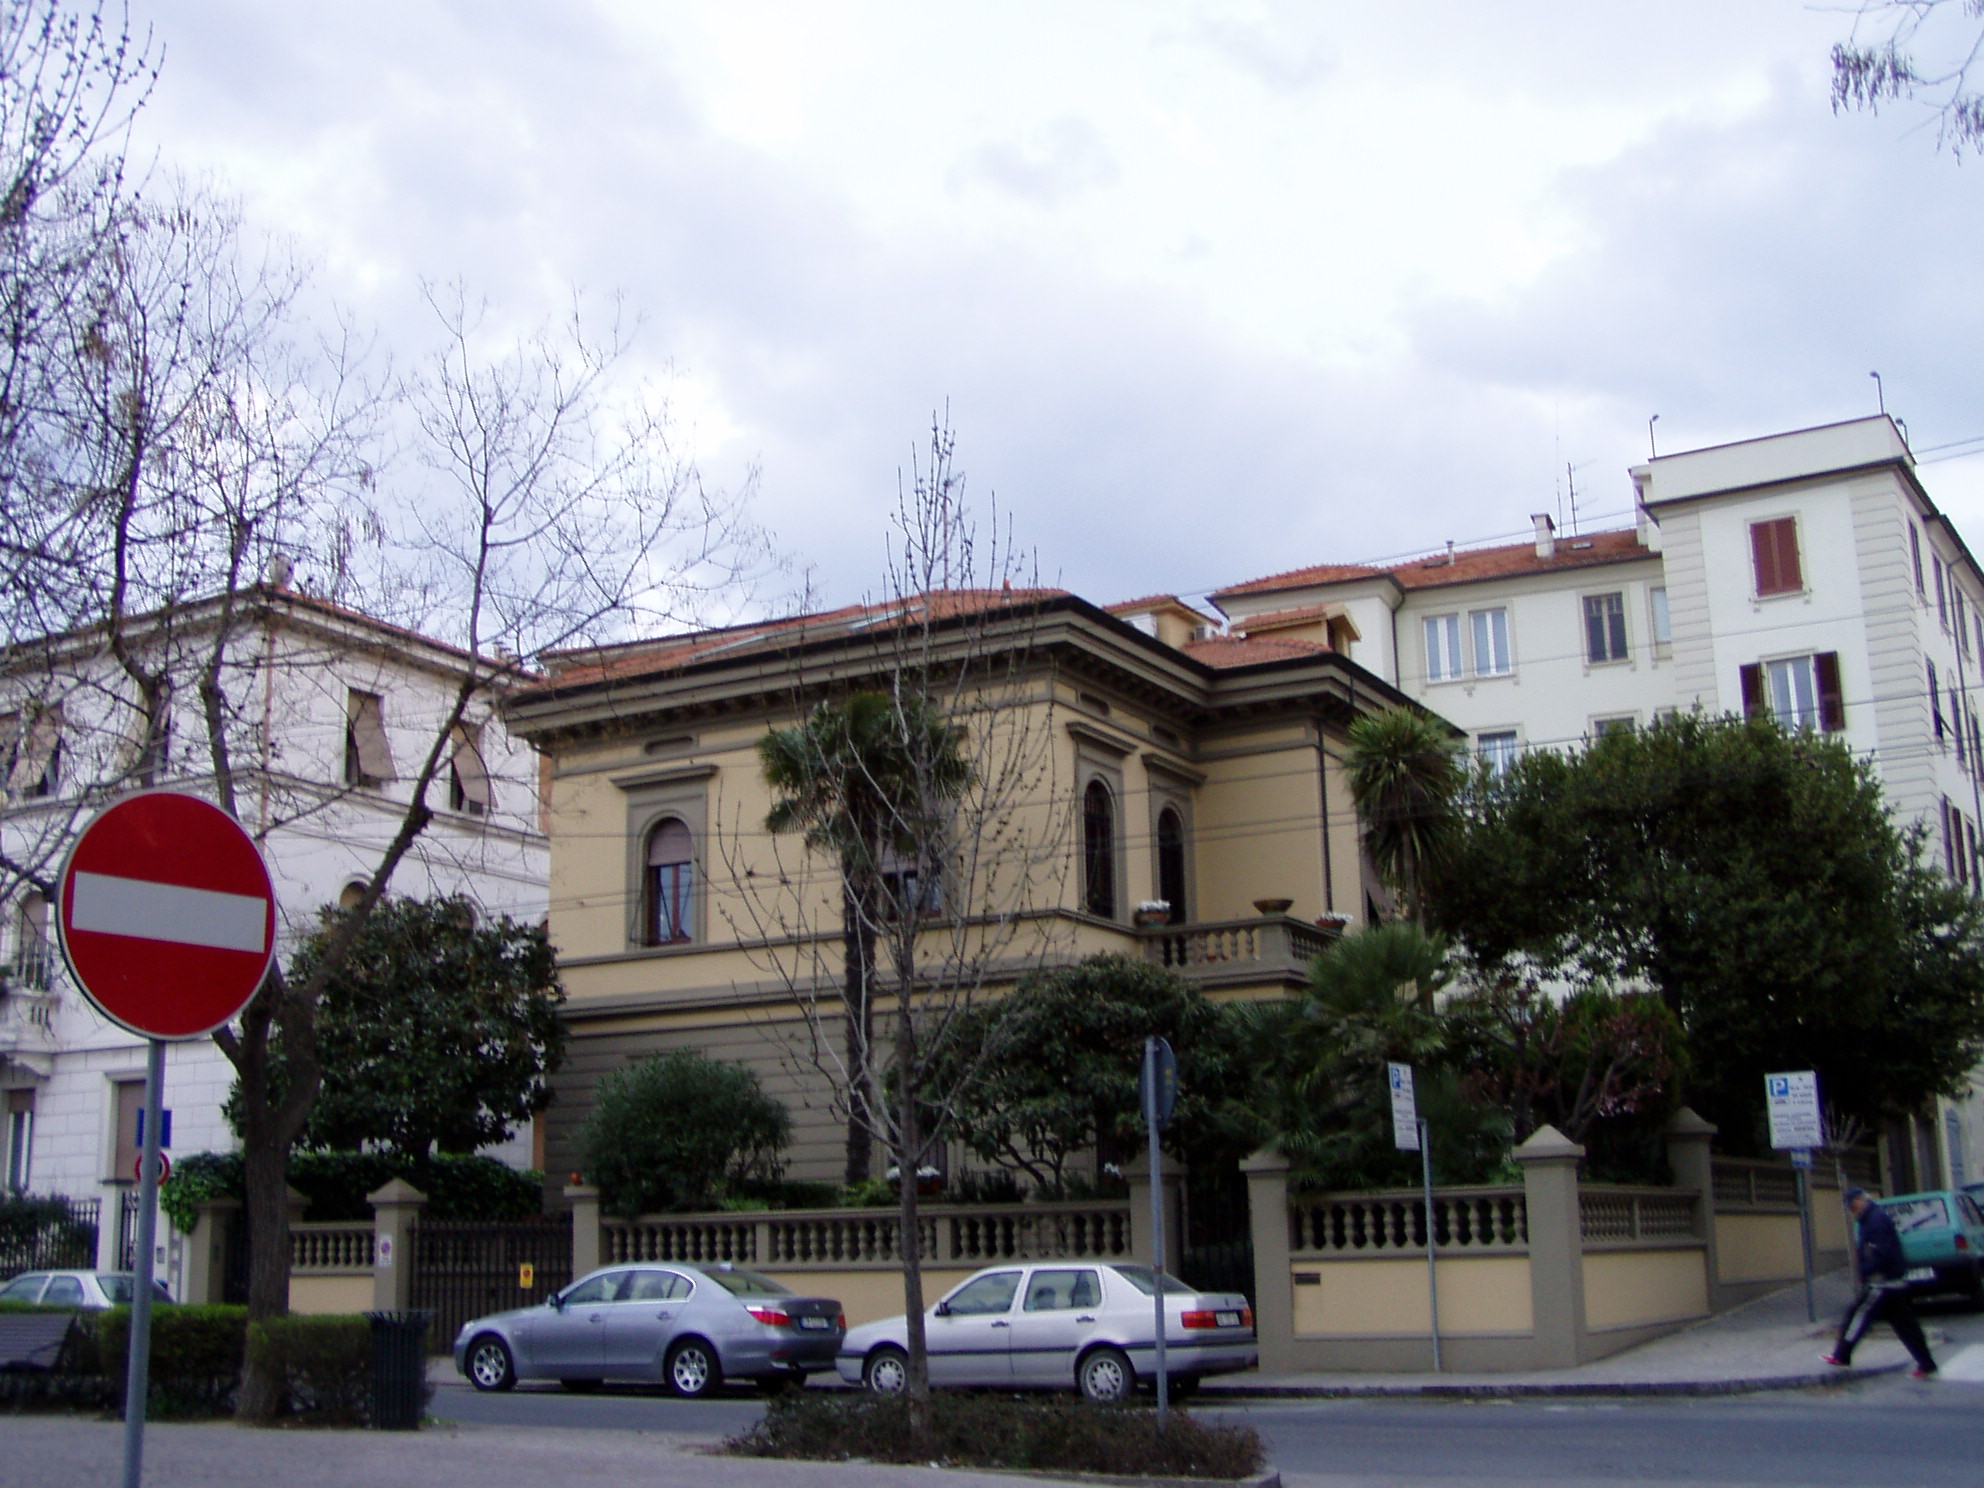 Palazzetto in stile neoclassico (villino) - Ancona (AN) 